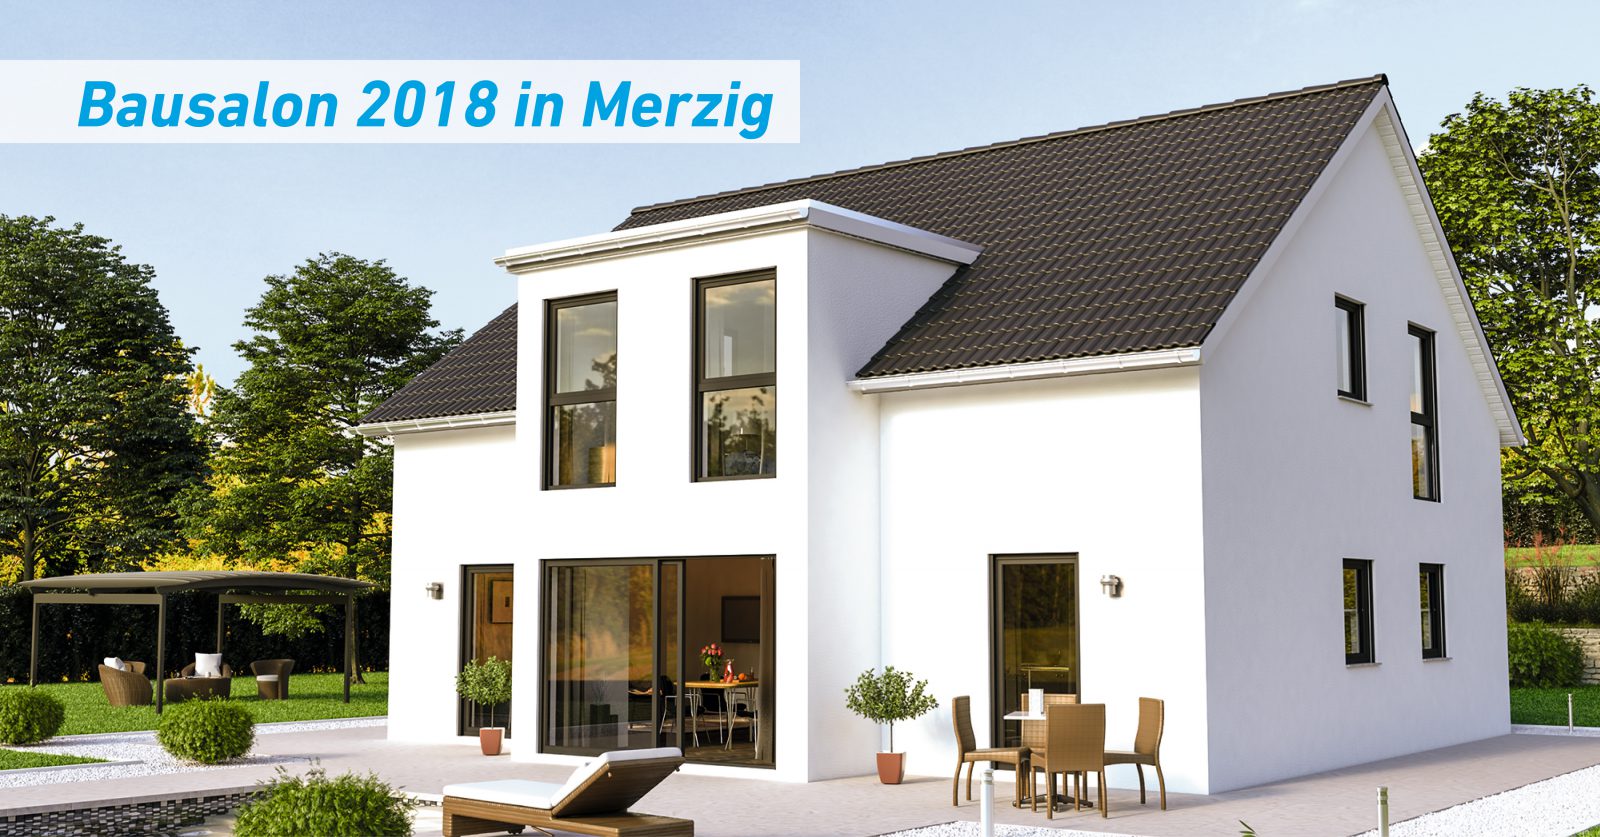 Bausalon 2018 in Merzig